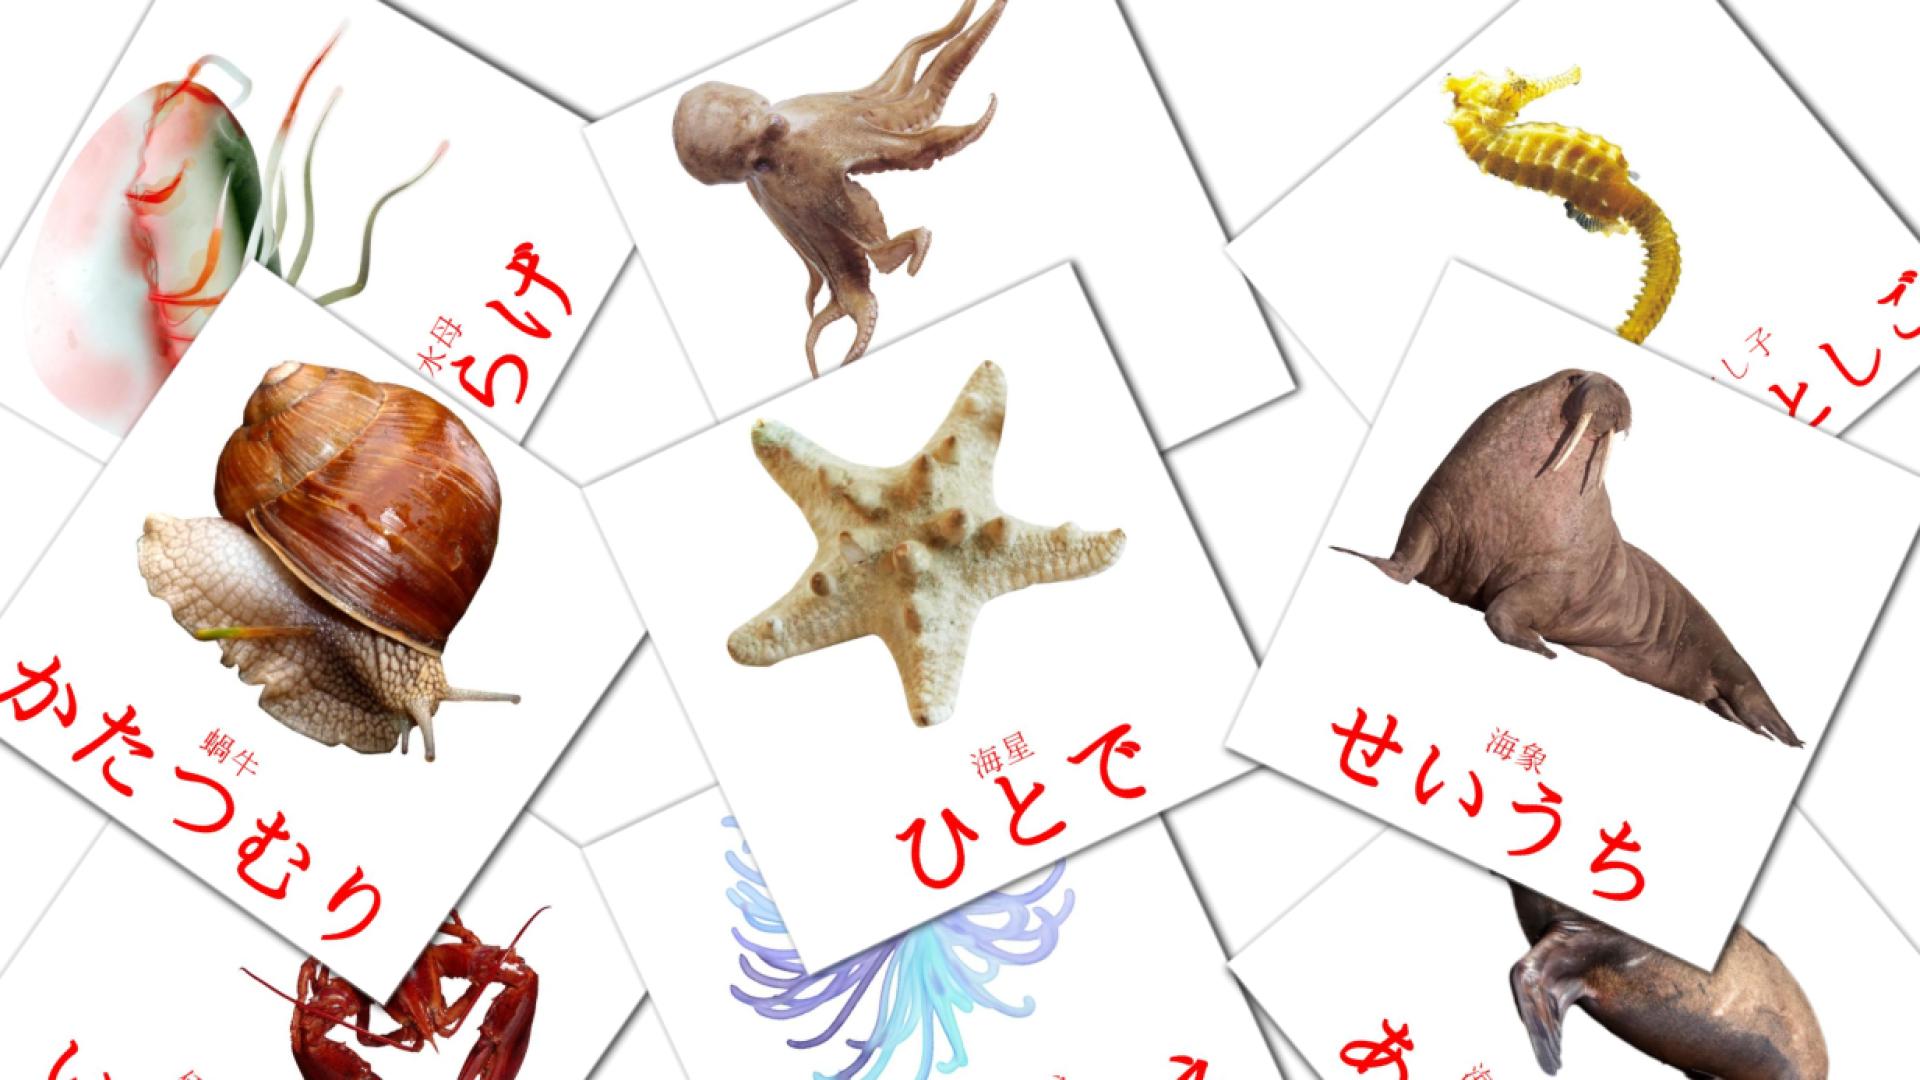 29 魚類 - ぎょるい flashcards